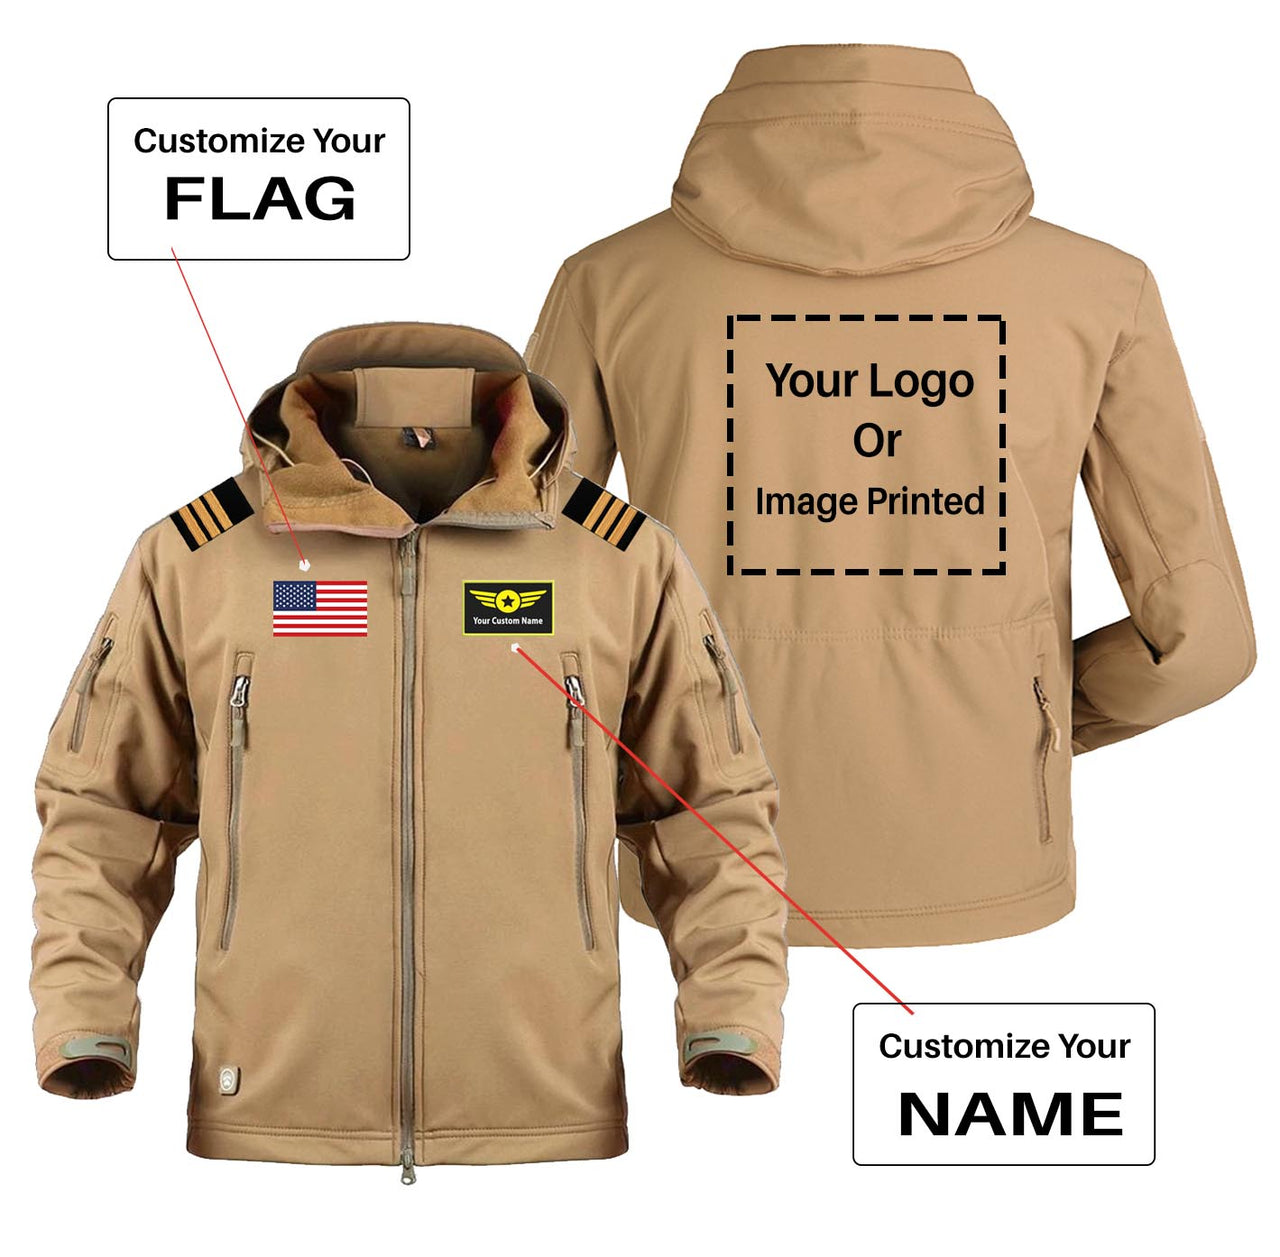 Custom Flag & Name & LOGO with EPAULETTES Military Pilot Jackets